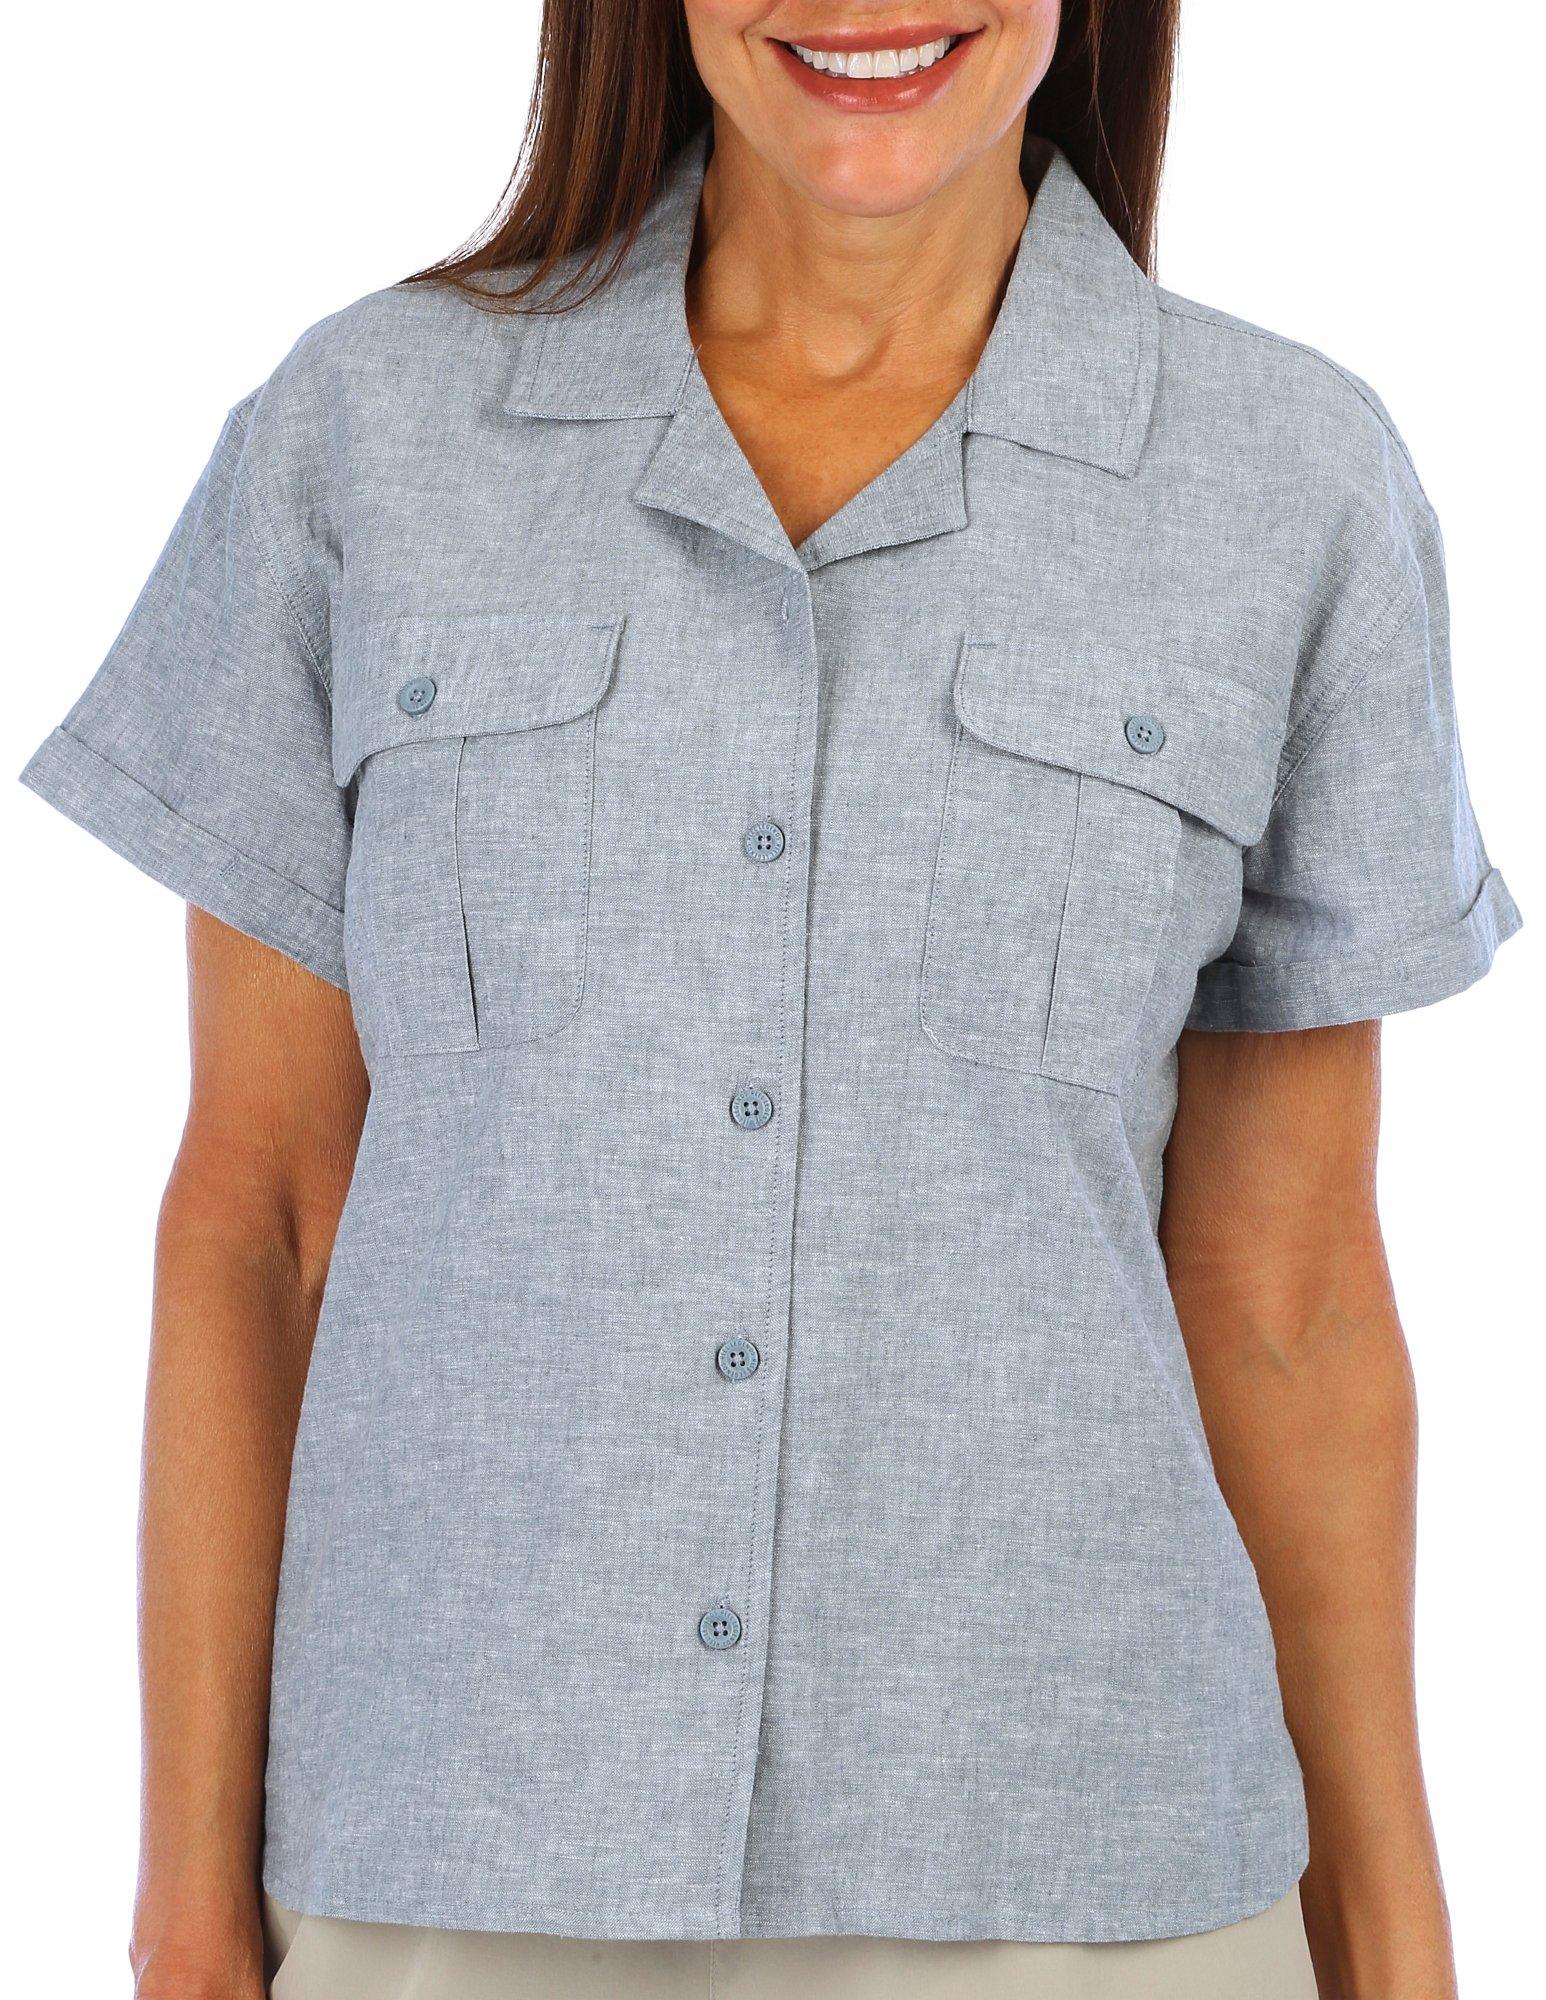 Womens Cotton Linen Short Sleeve Shirt